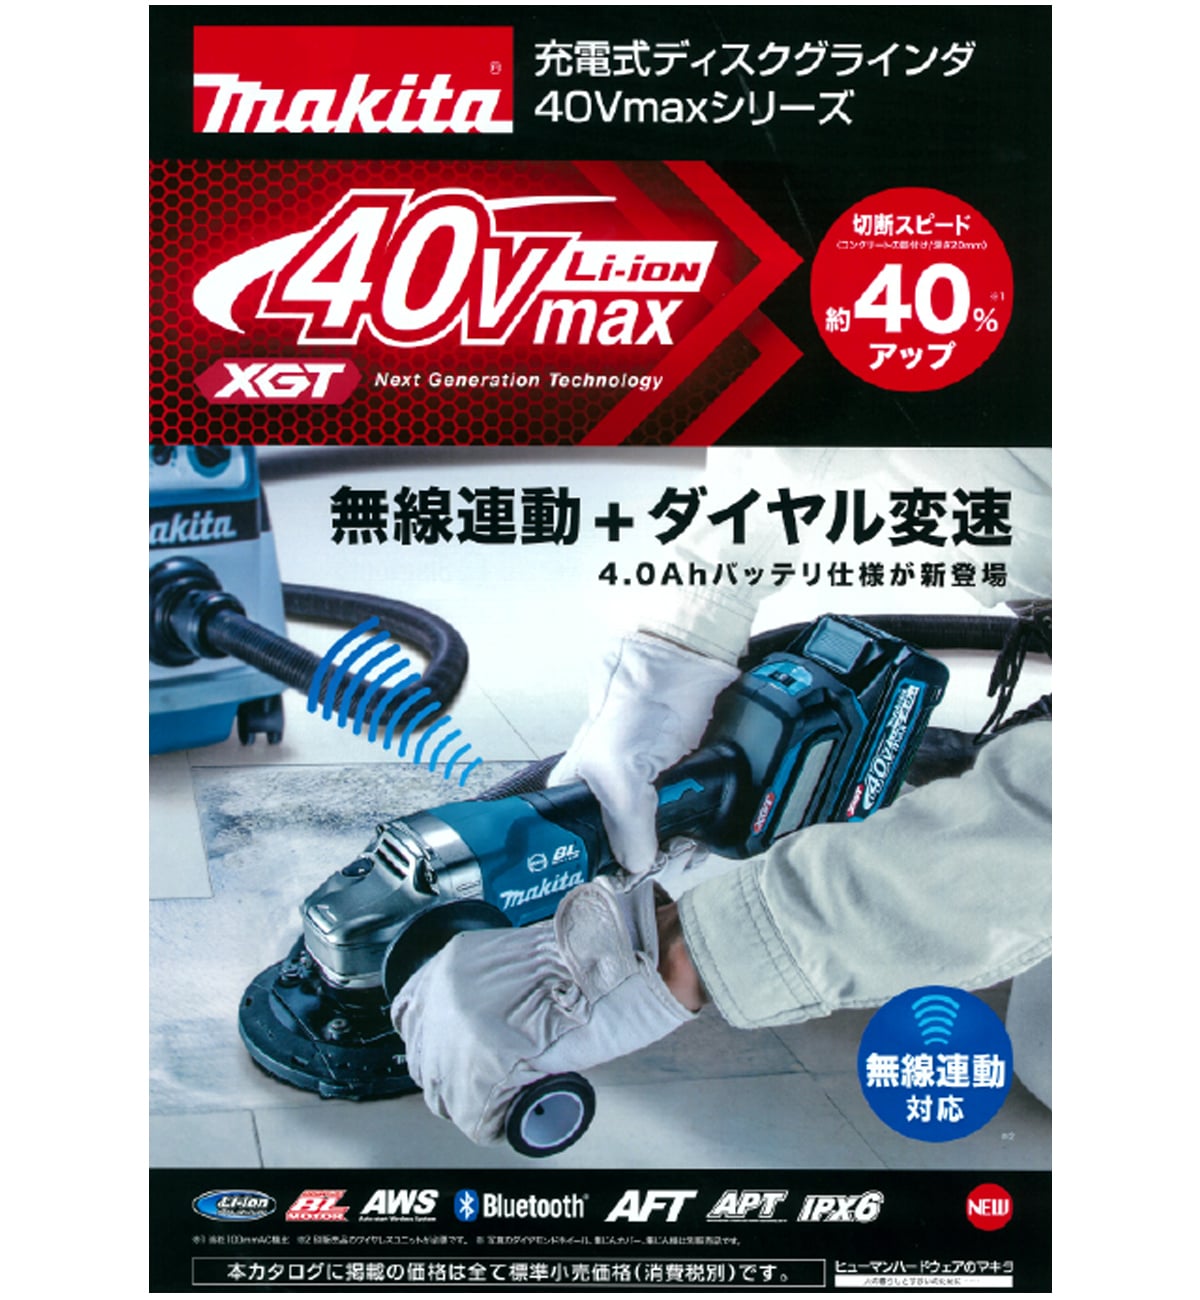 マキタ GA020GZ 125mm充電式グラインダー 40V 本体＋ケース